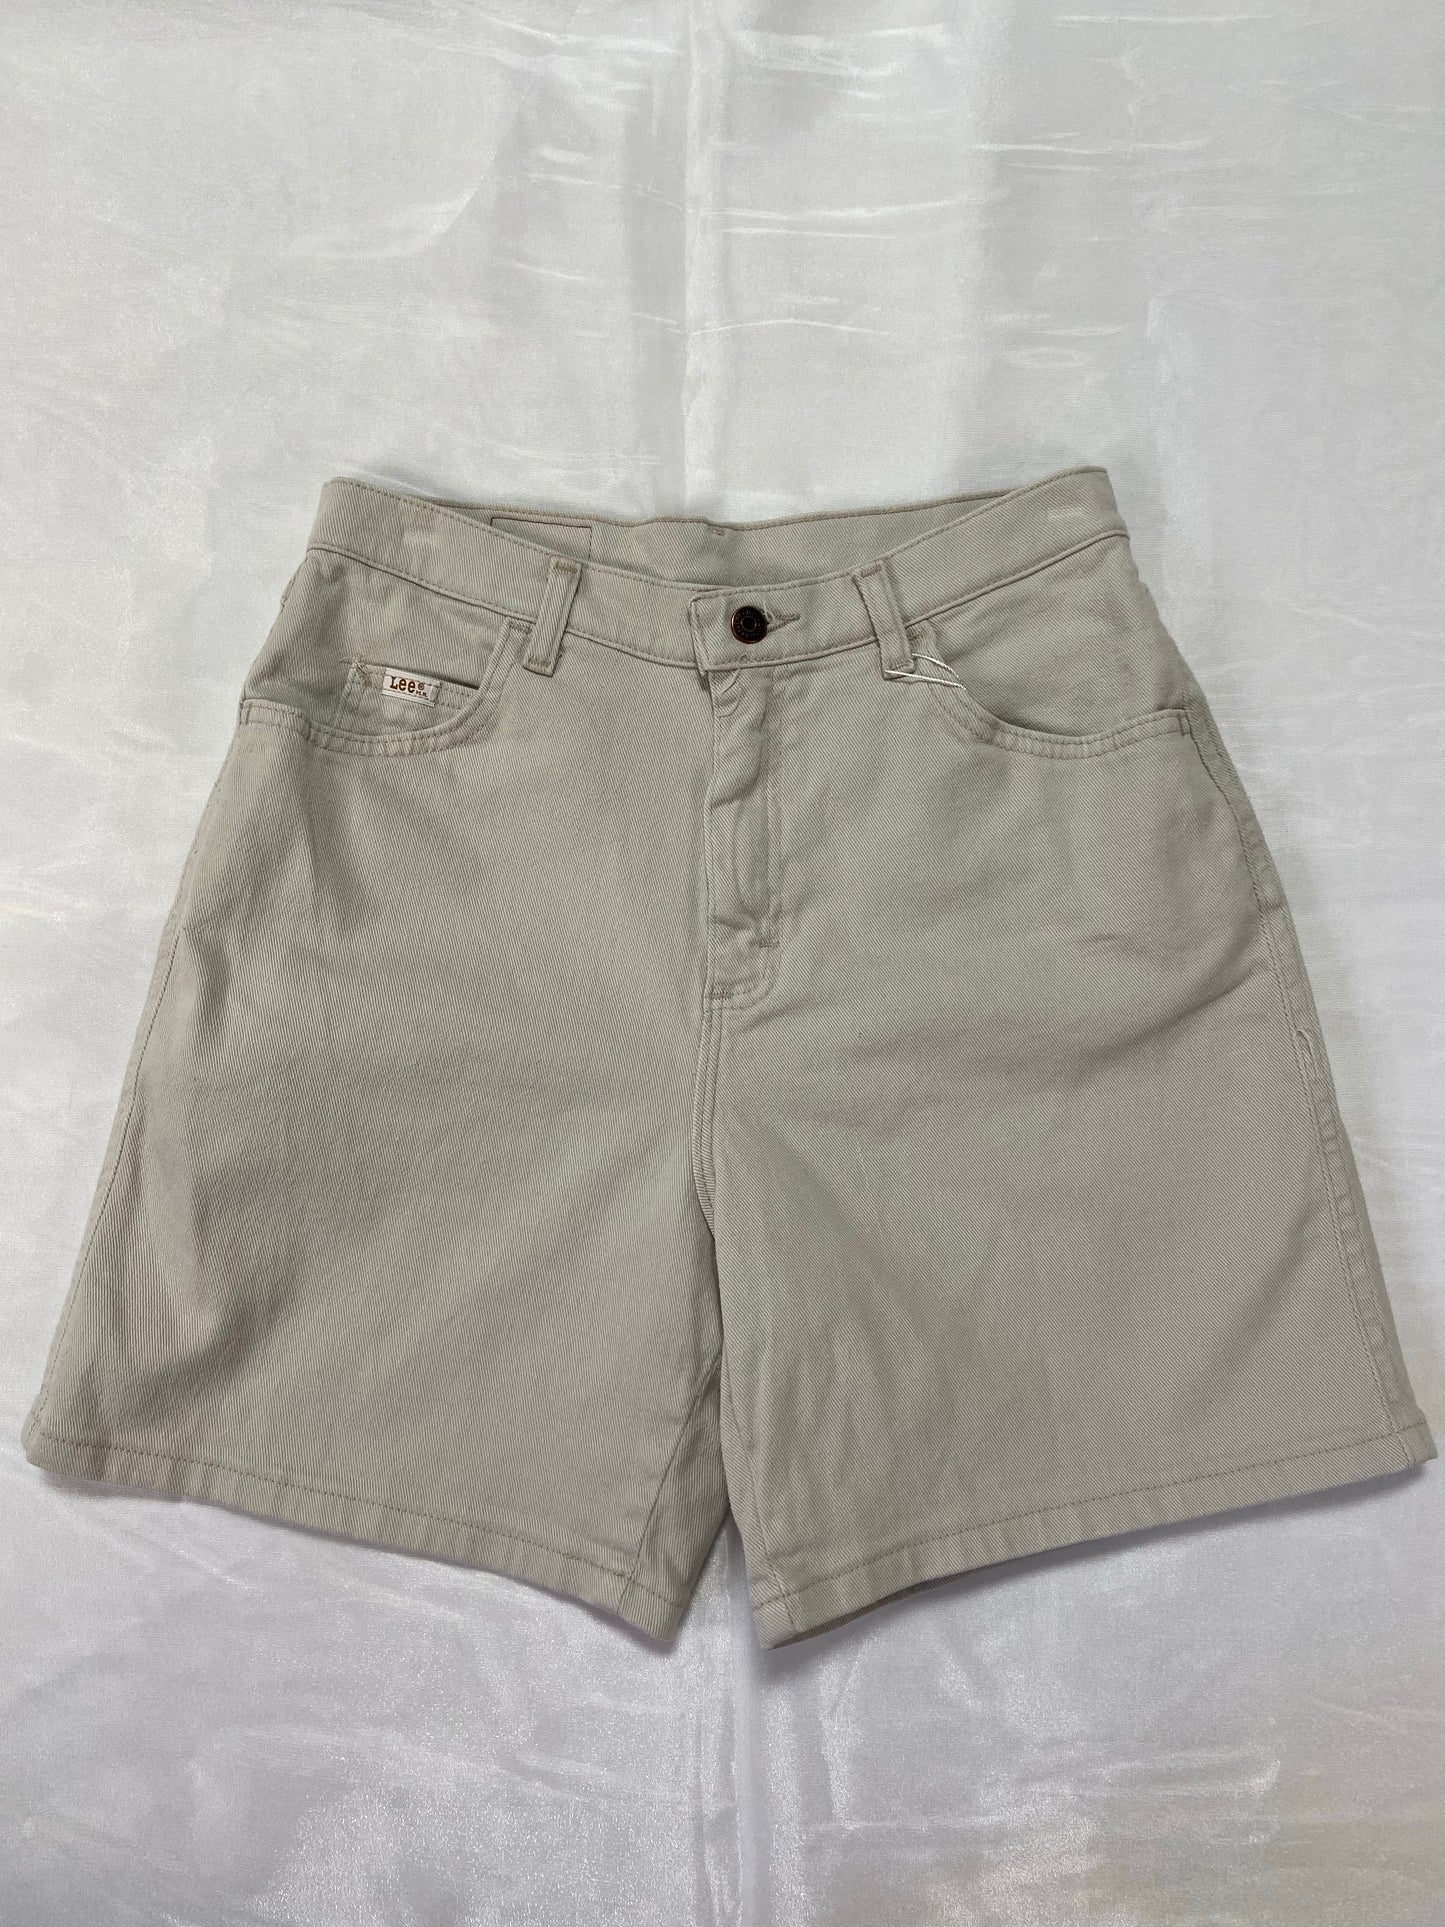 Khaki Lee Denim Shorts - 28”